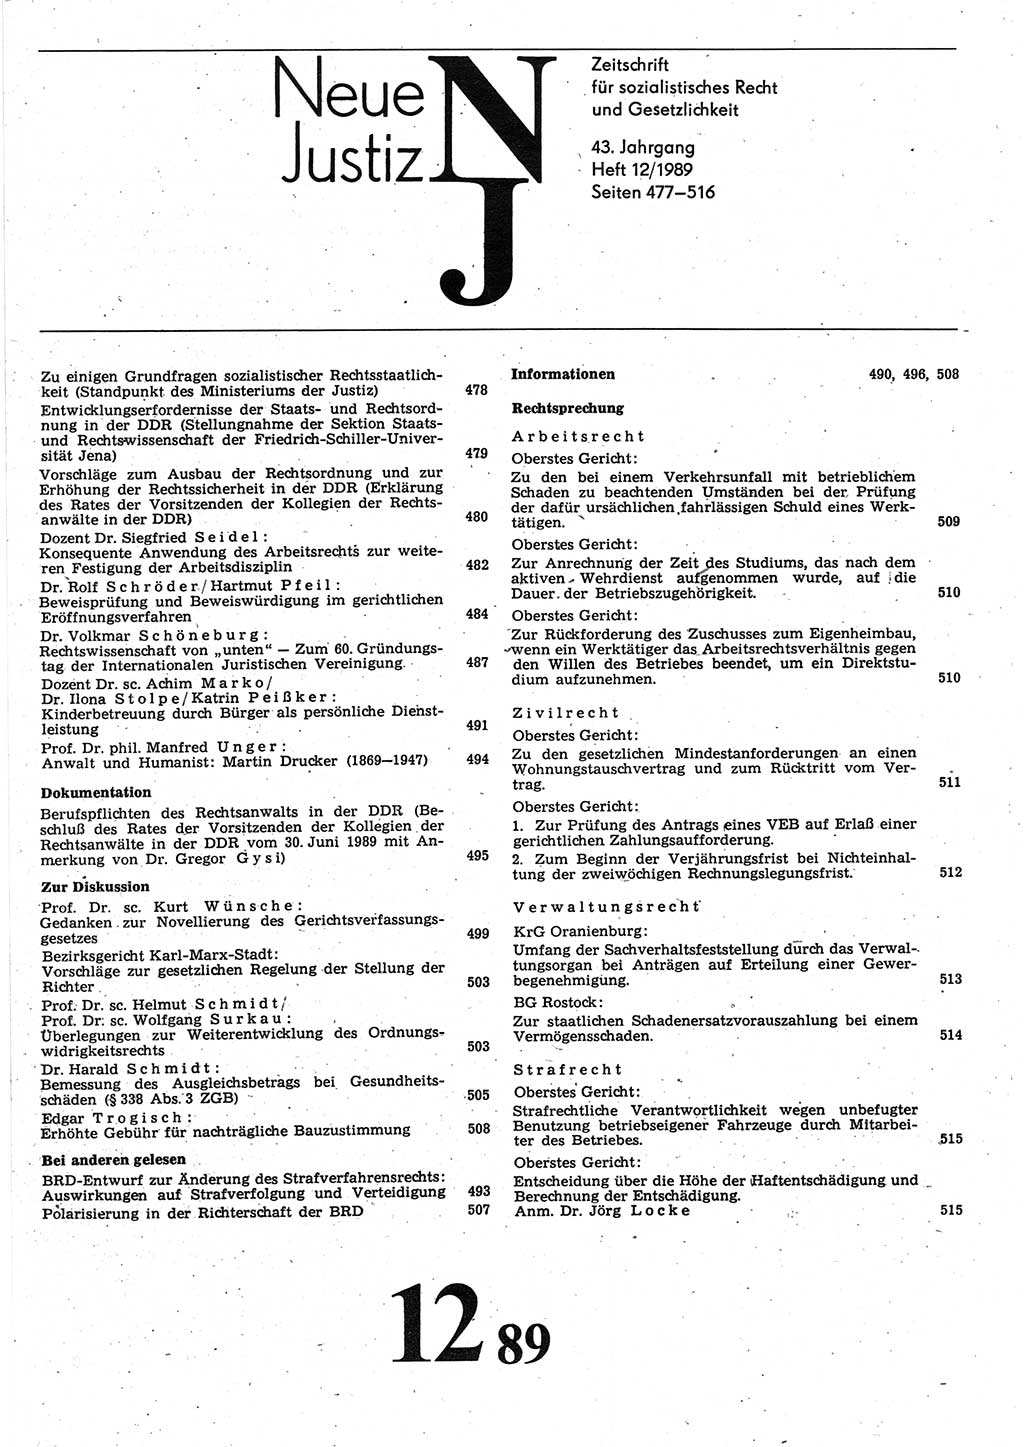 Neue Justiz (NJ), Zeitschrift für sozialistisches Recht und Gesetzlichkeit [Deutsche Demokratische Republik (DDR)], 43. Jahrgang 1989, Seite 477 (NJ DDR 1989, S. 477)